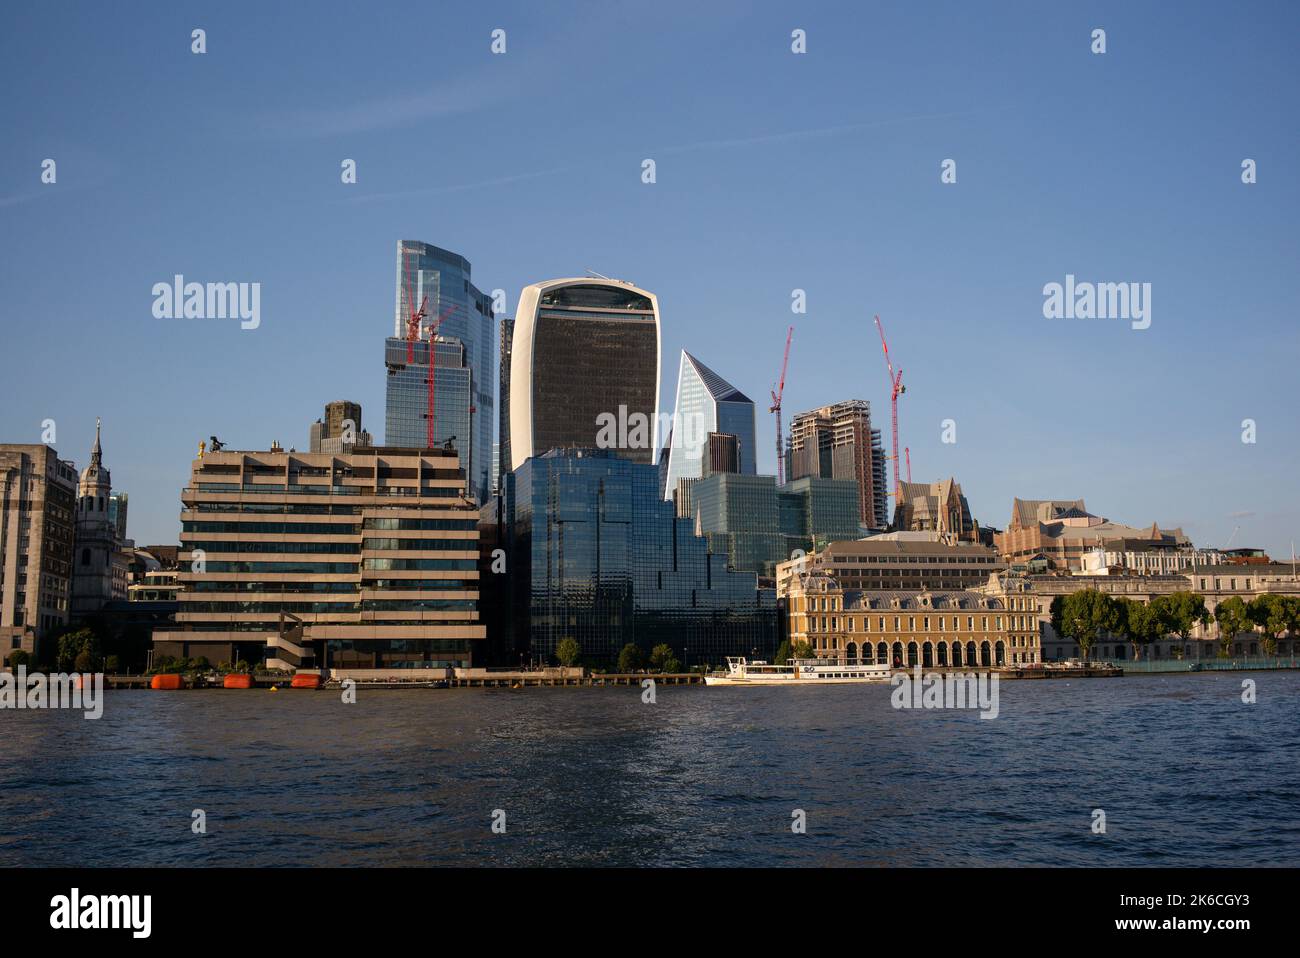 Un paisaje urbano a la luz del día del distrito financiero Square Mile London con modernos rascacielos vistos desde el río támesis con Old Billingsgate. Foto de stock